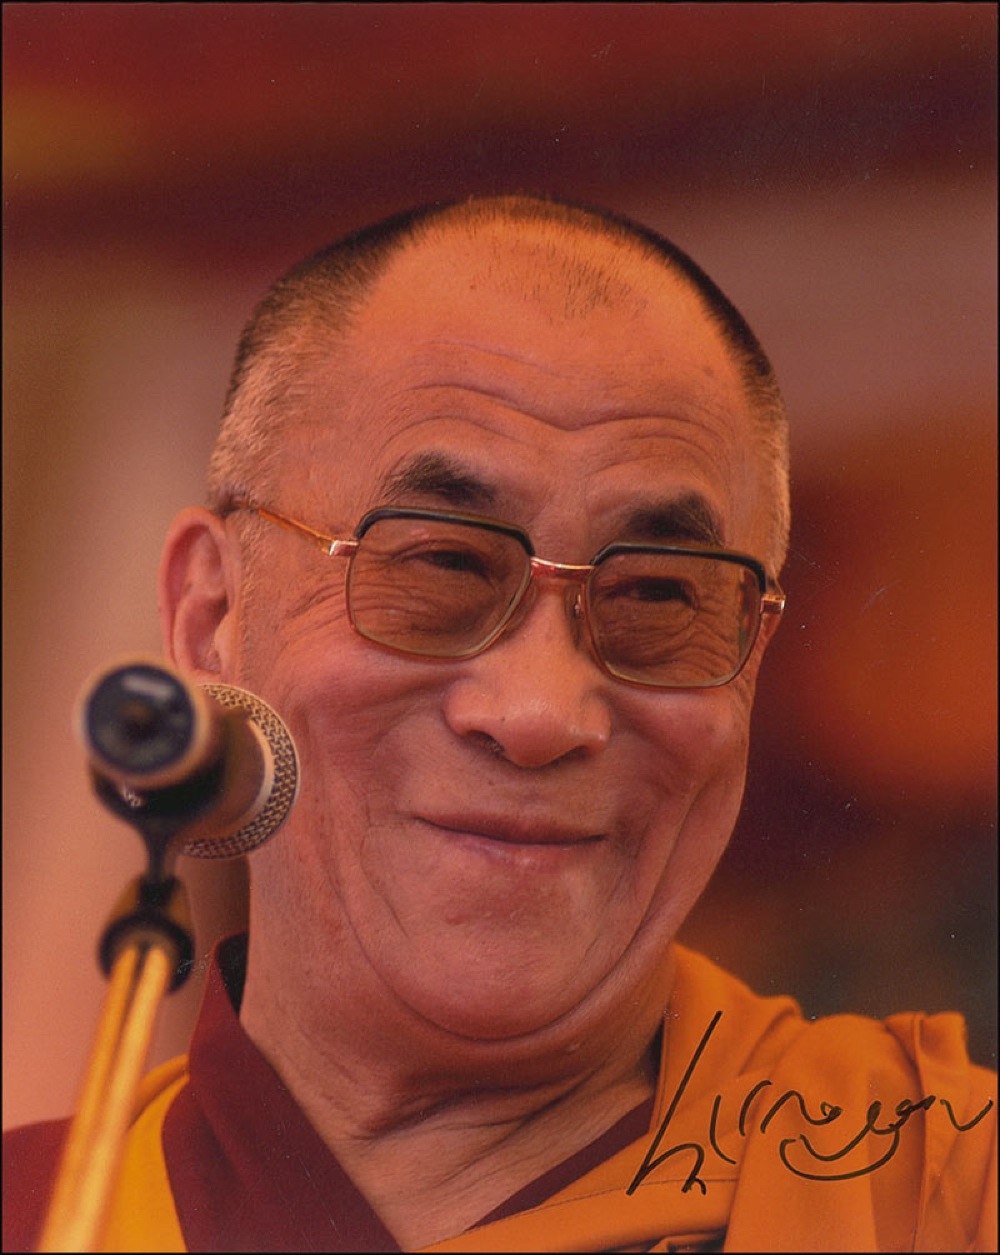 Lot #219 Dalai Lama